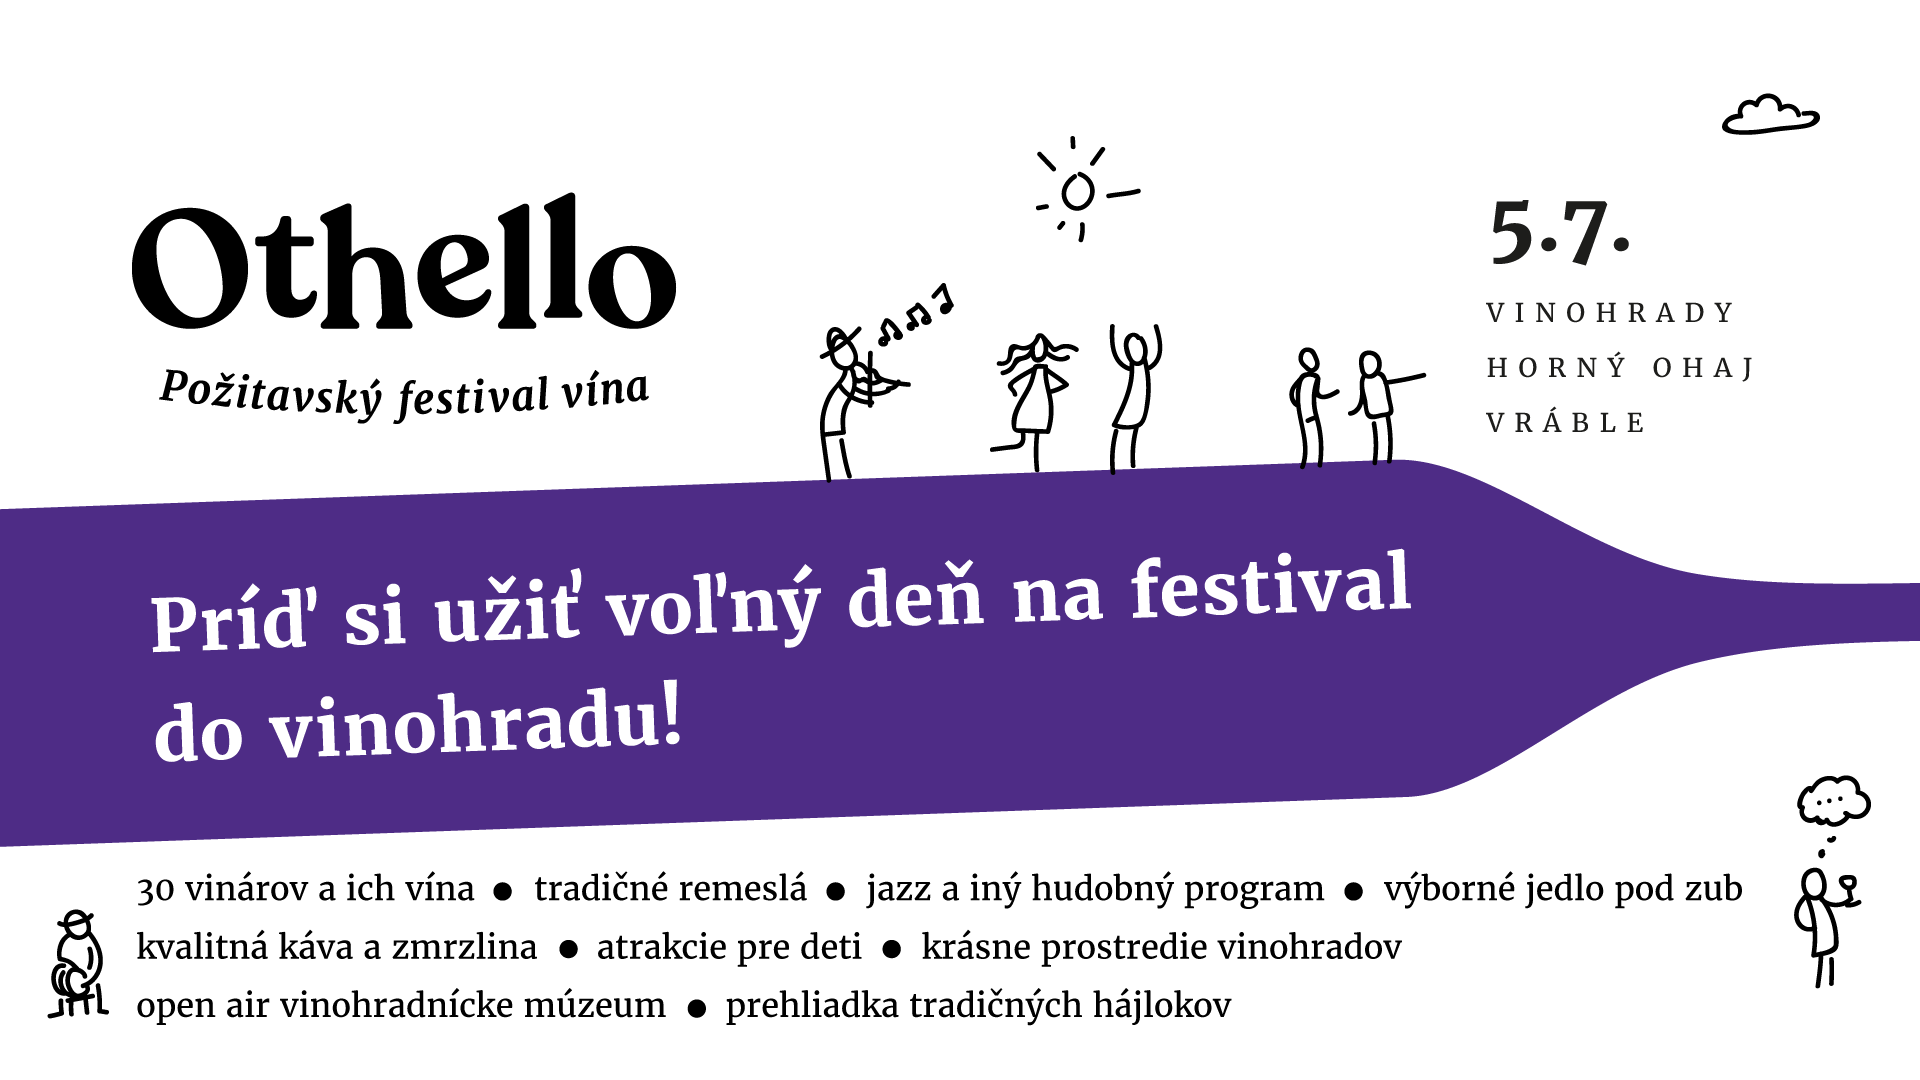 Othello – Požitavský festival vína (5.7.2019)